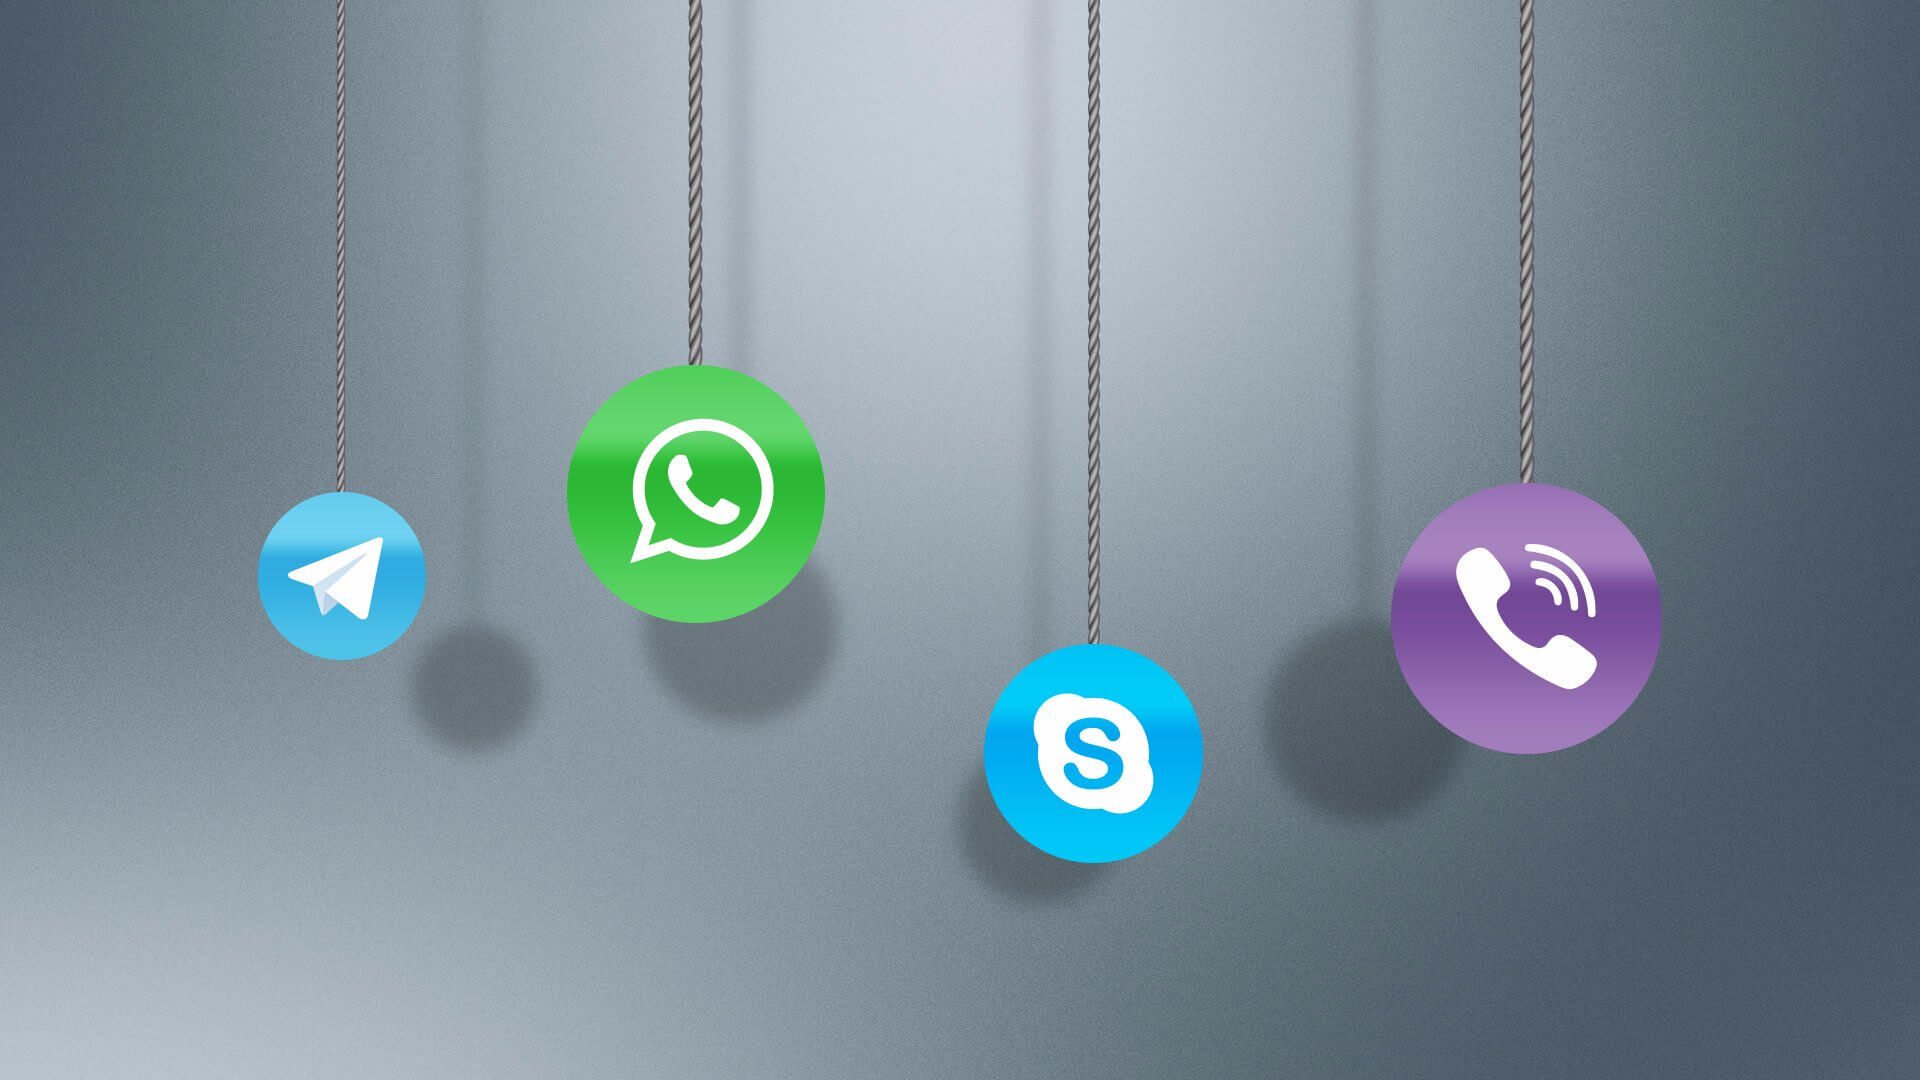 Названо приложение, делающее доступными даже удалённые сообщения в WhatsApp и других мессенджерах